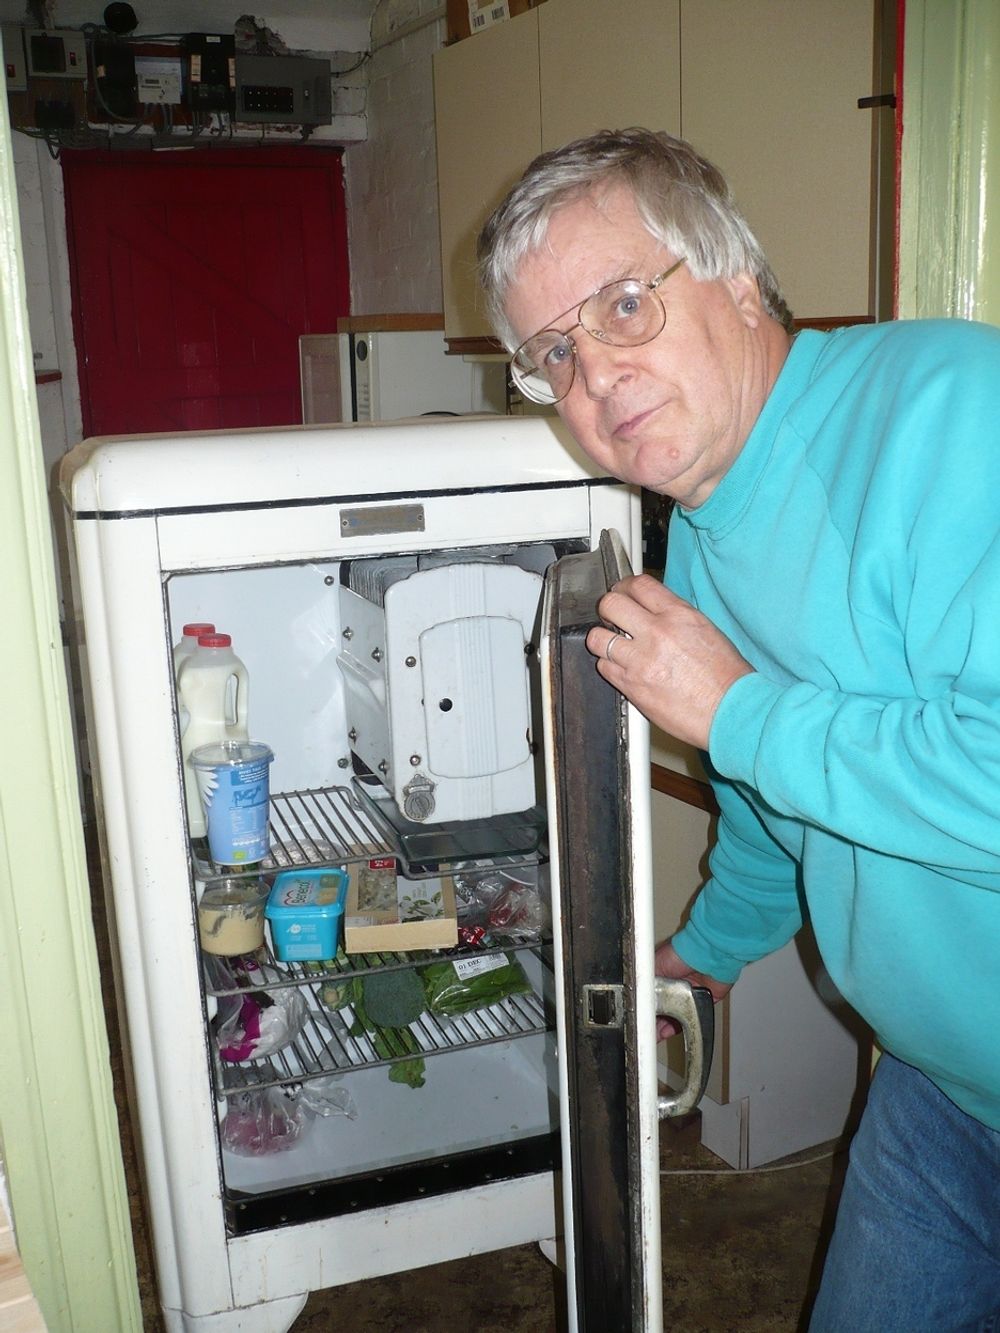 GAMMEL OG KALD:
Jim Williamson har fremdeles glede av sitt 71 år gamle kjøleskap